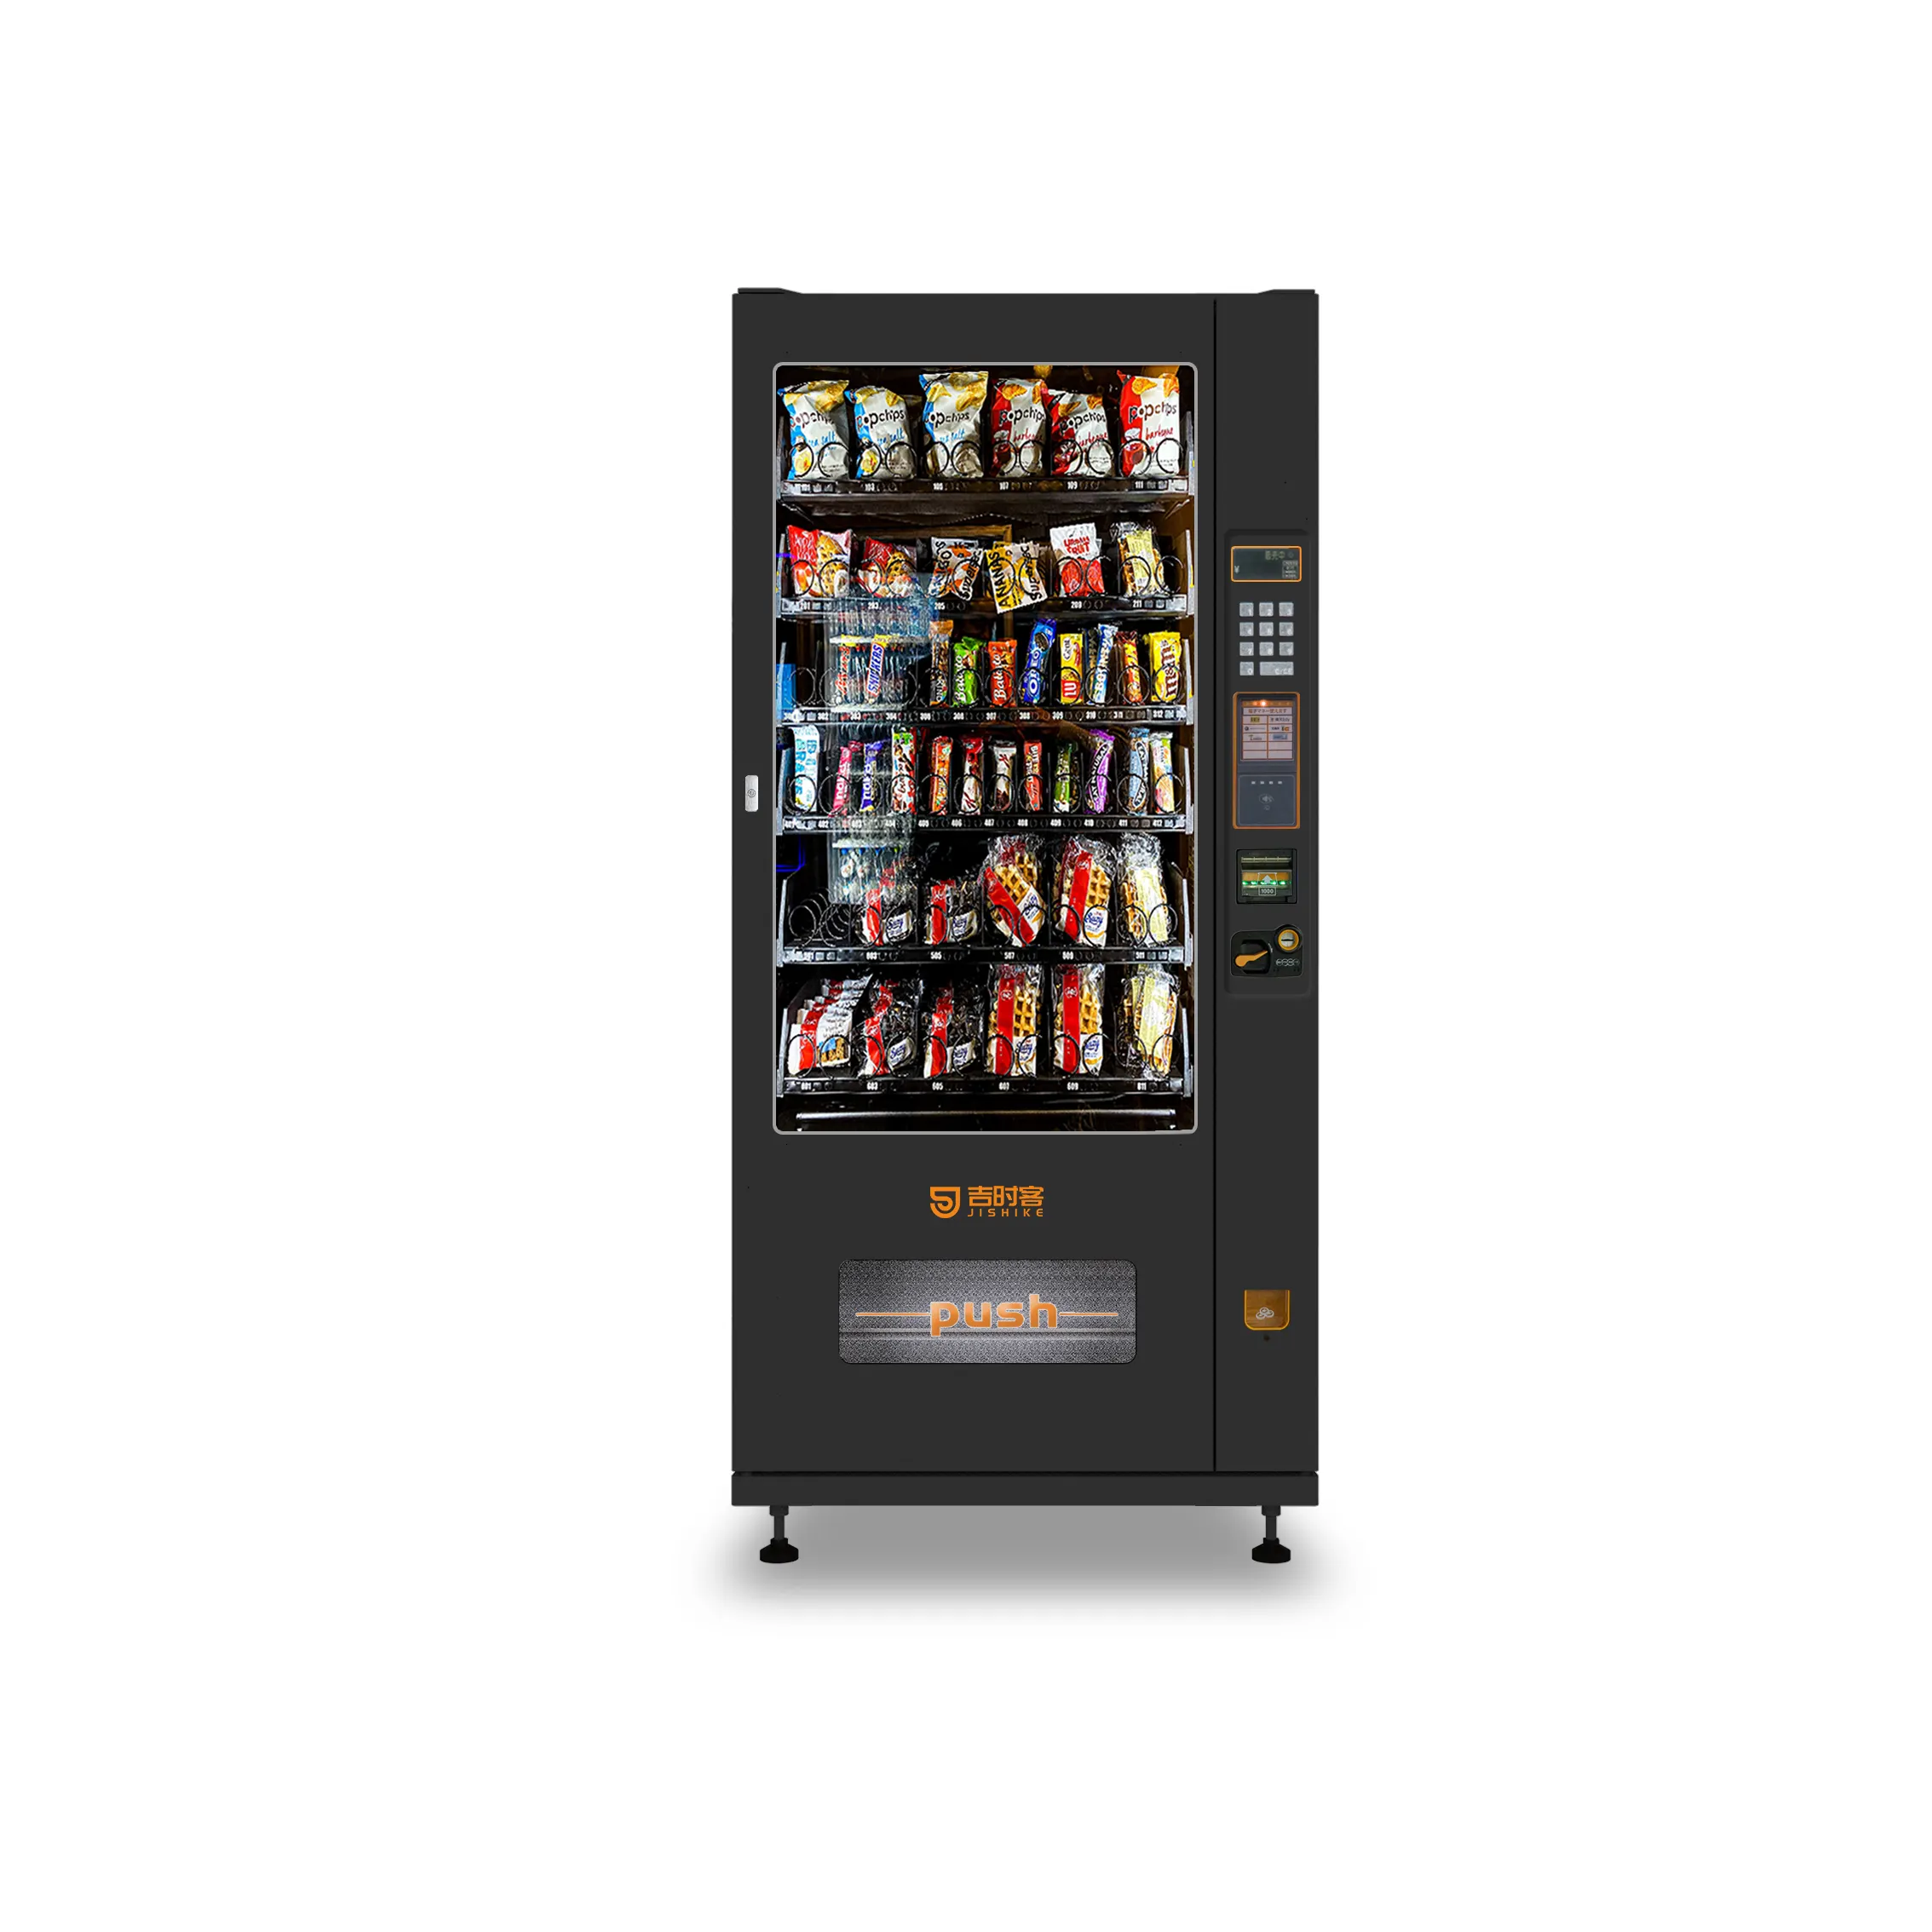 Venda quente Snack Machine Venda Automática Vending Machine para Snack Vending Machine com Leitor de Cartão